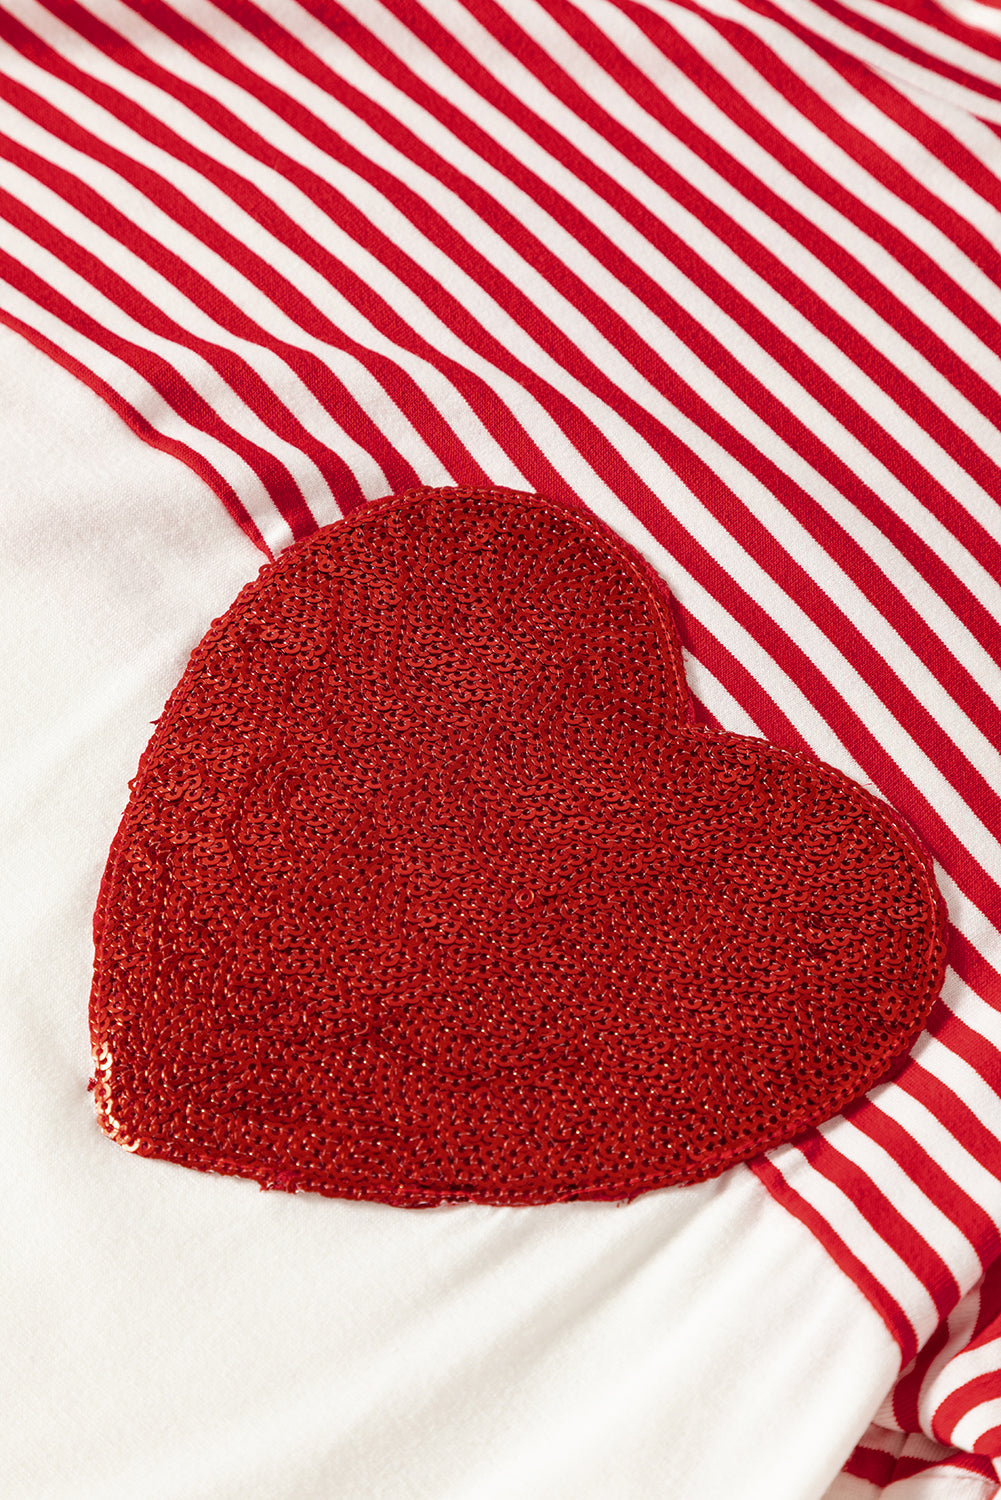 Vatrenocrvena majica sa šljokicama u boji u obliku srca na pruge za Valentinovo